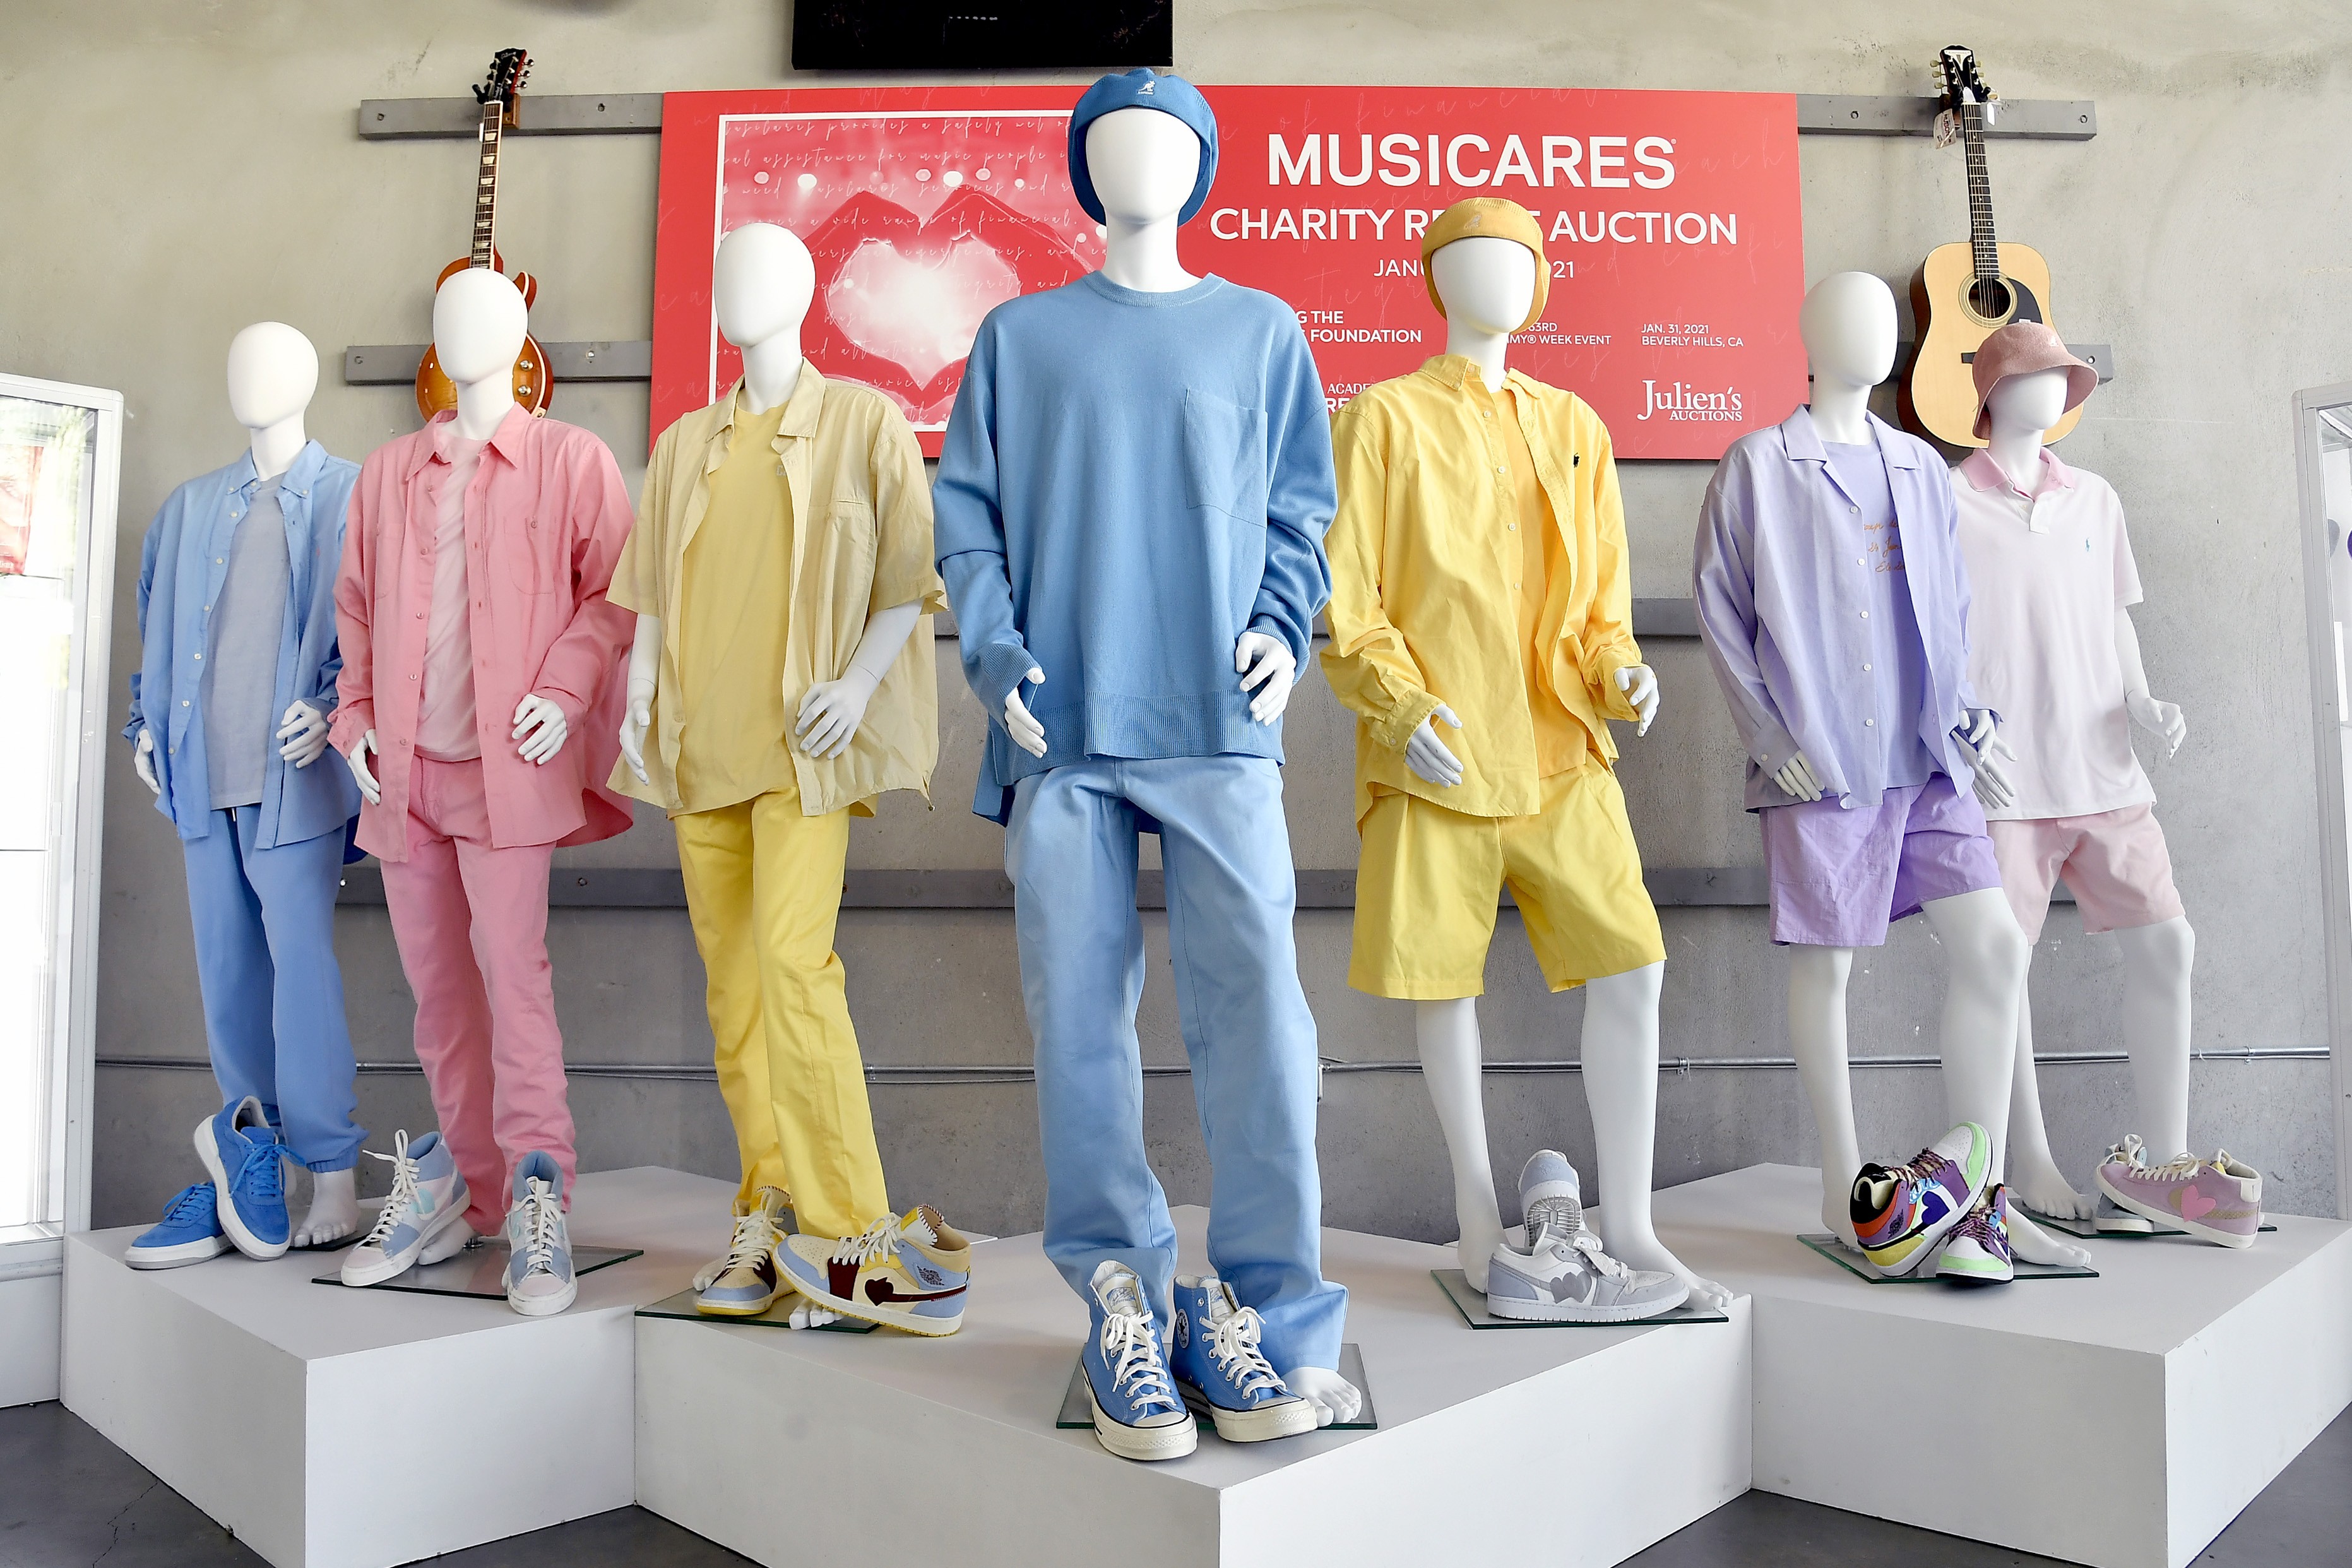 Valores arrecadados com as peças do grupo BTS serão enviados ao MusiCares (Foto: Getty Images)